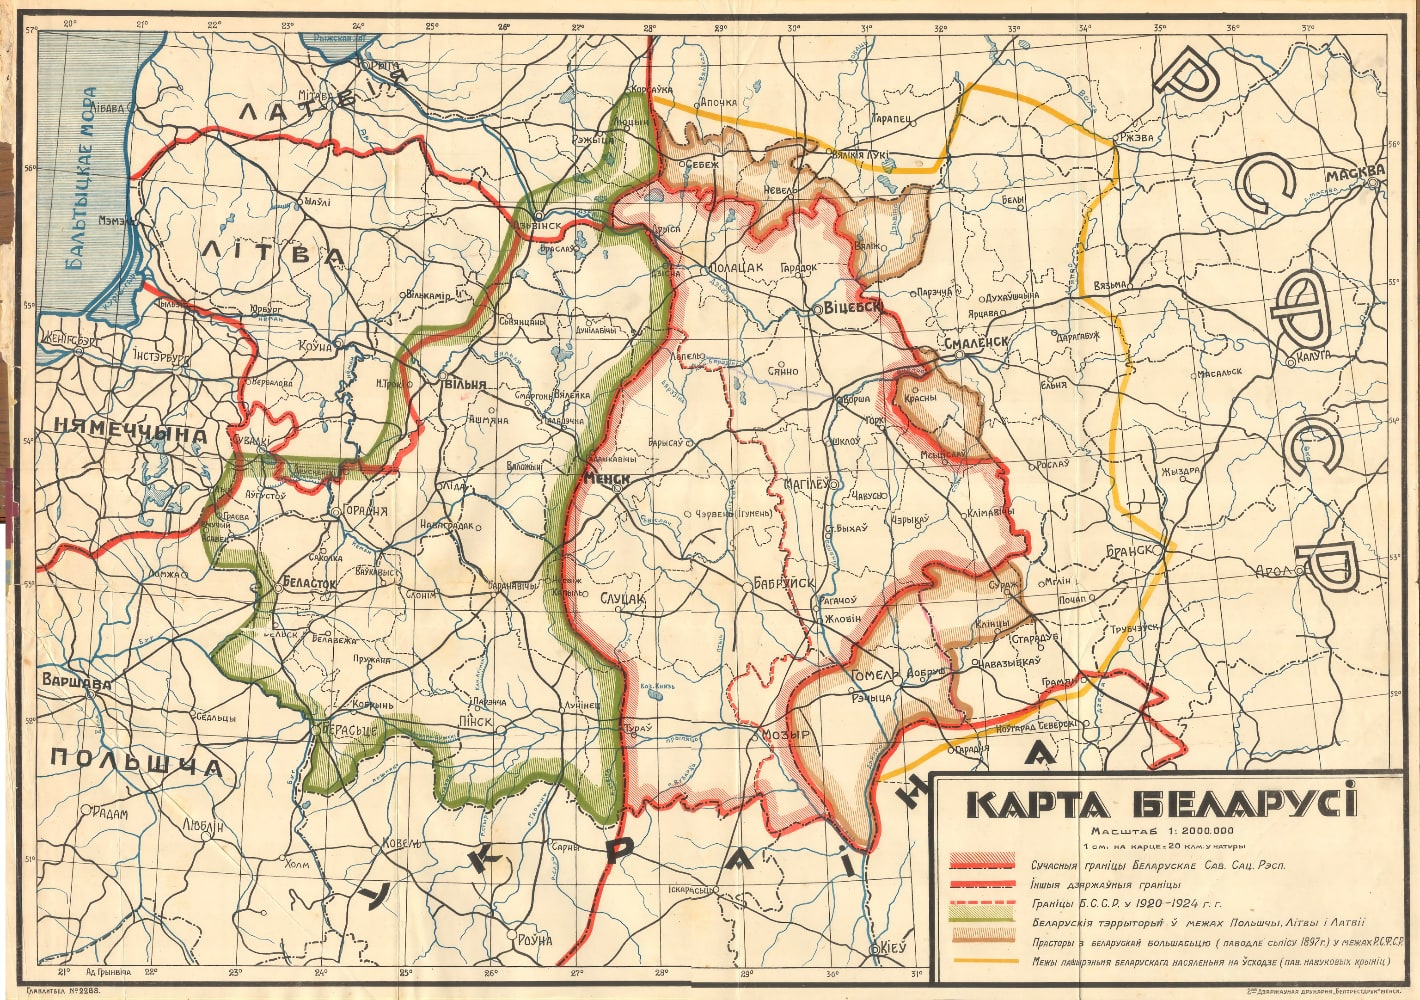 Karta Bielarusi, 1924 h.